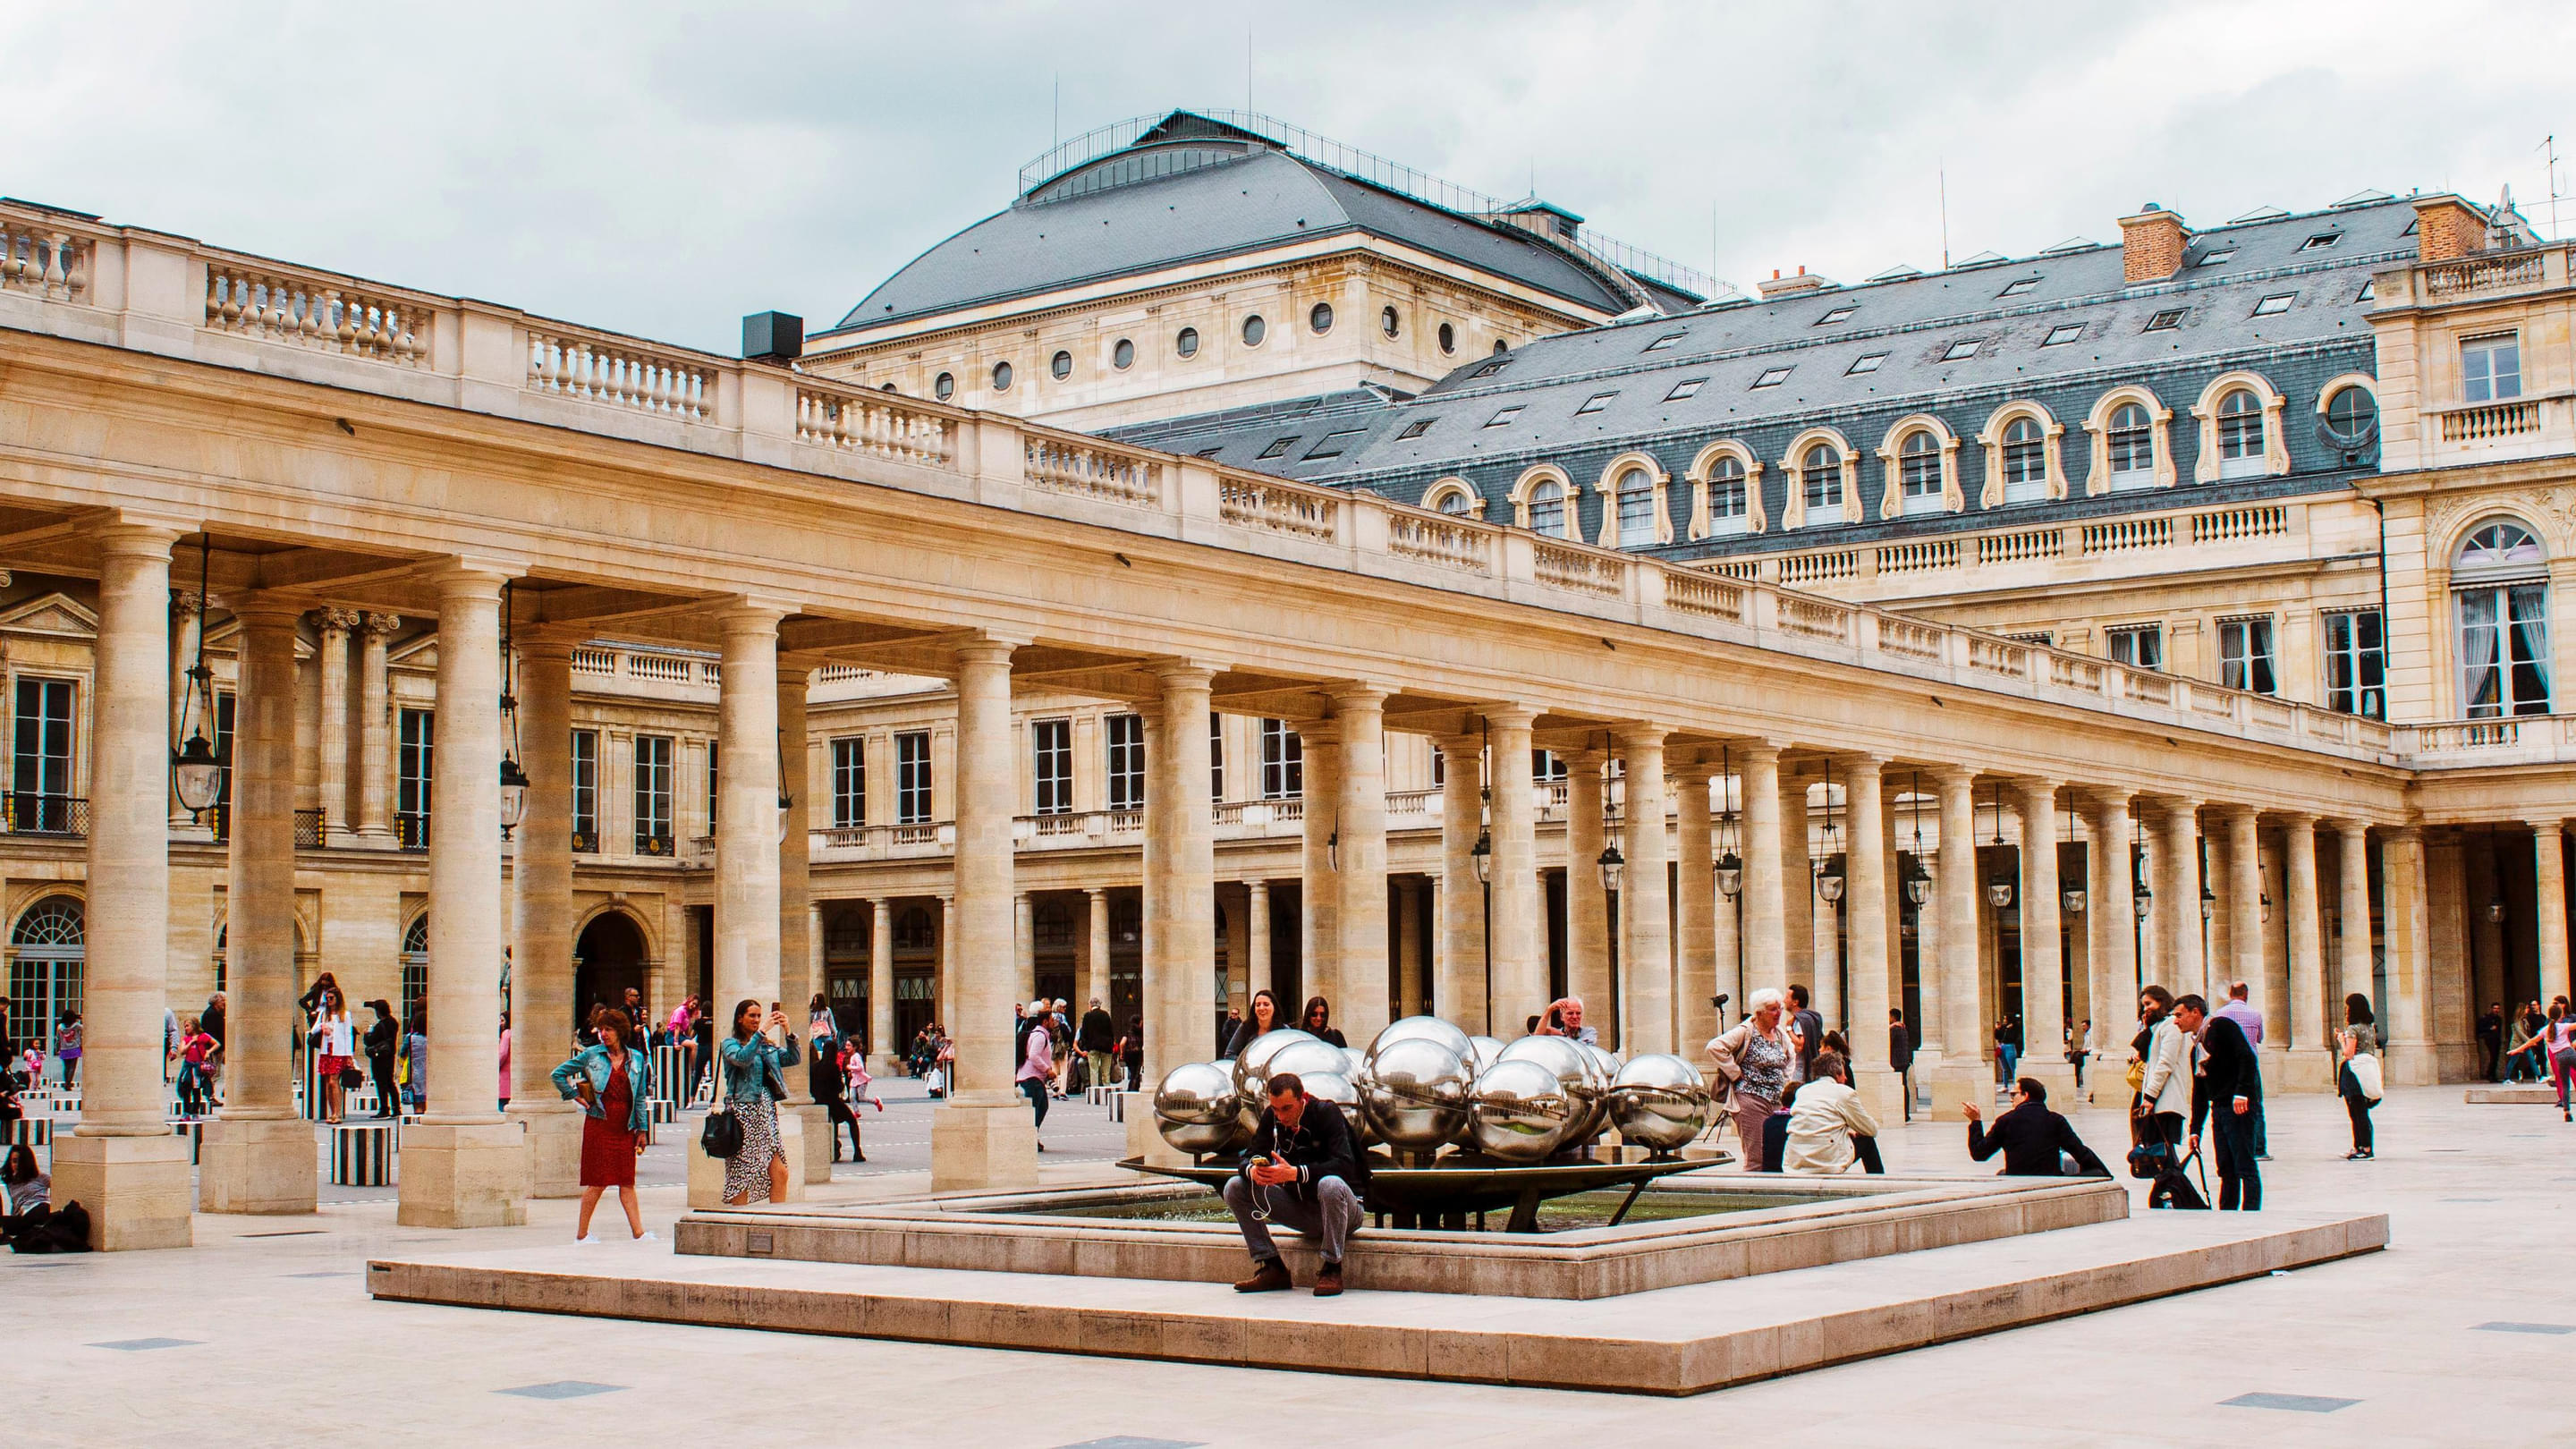 Domaine National Du Palais Royal Overview